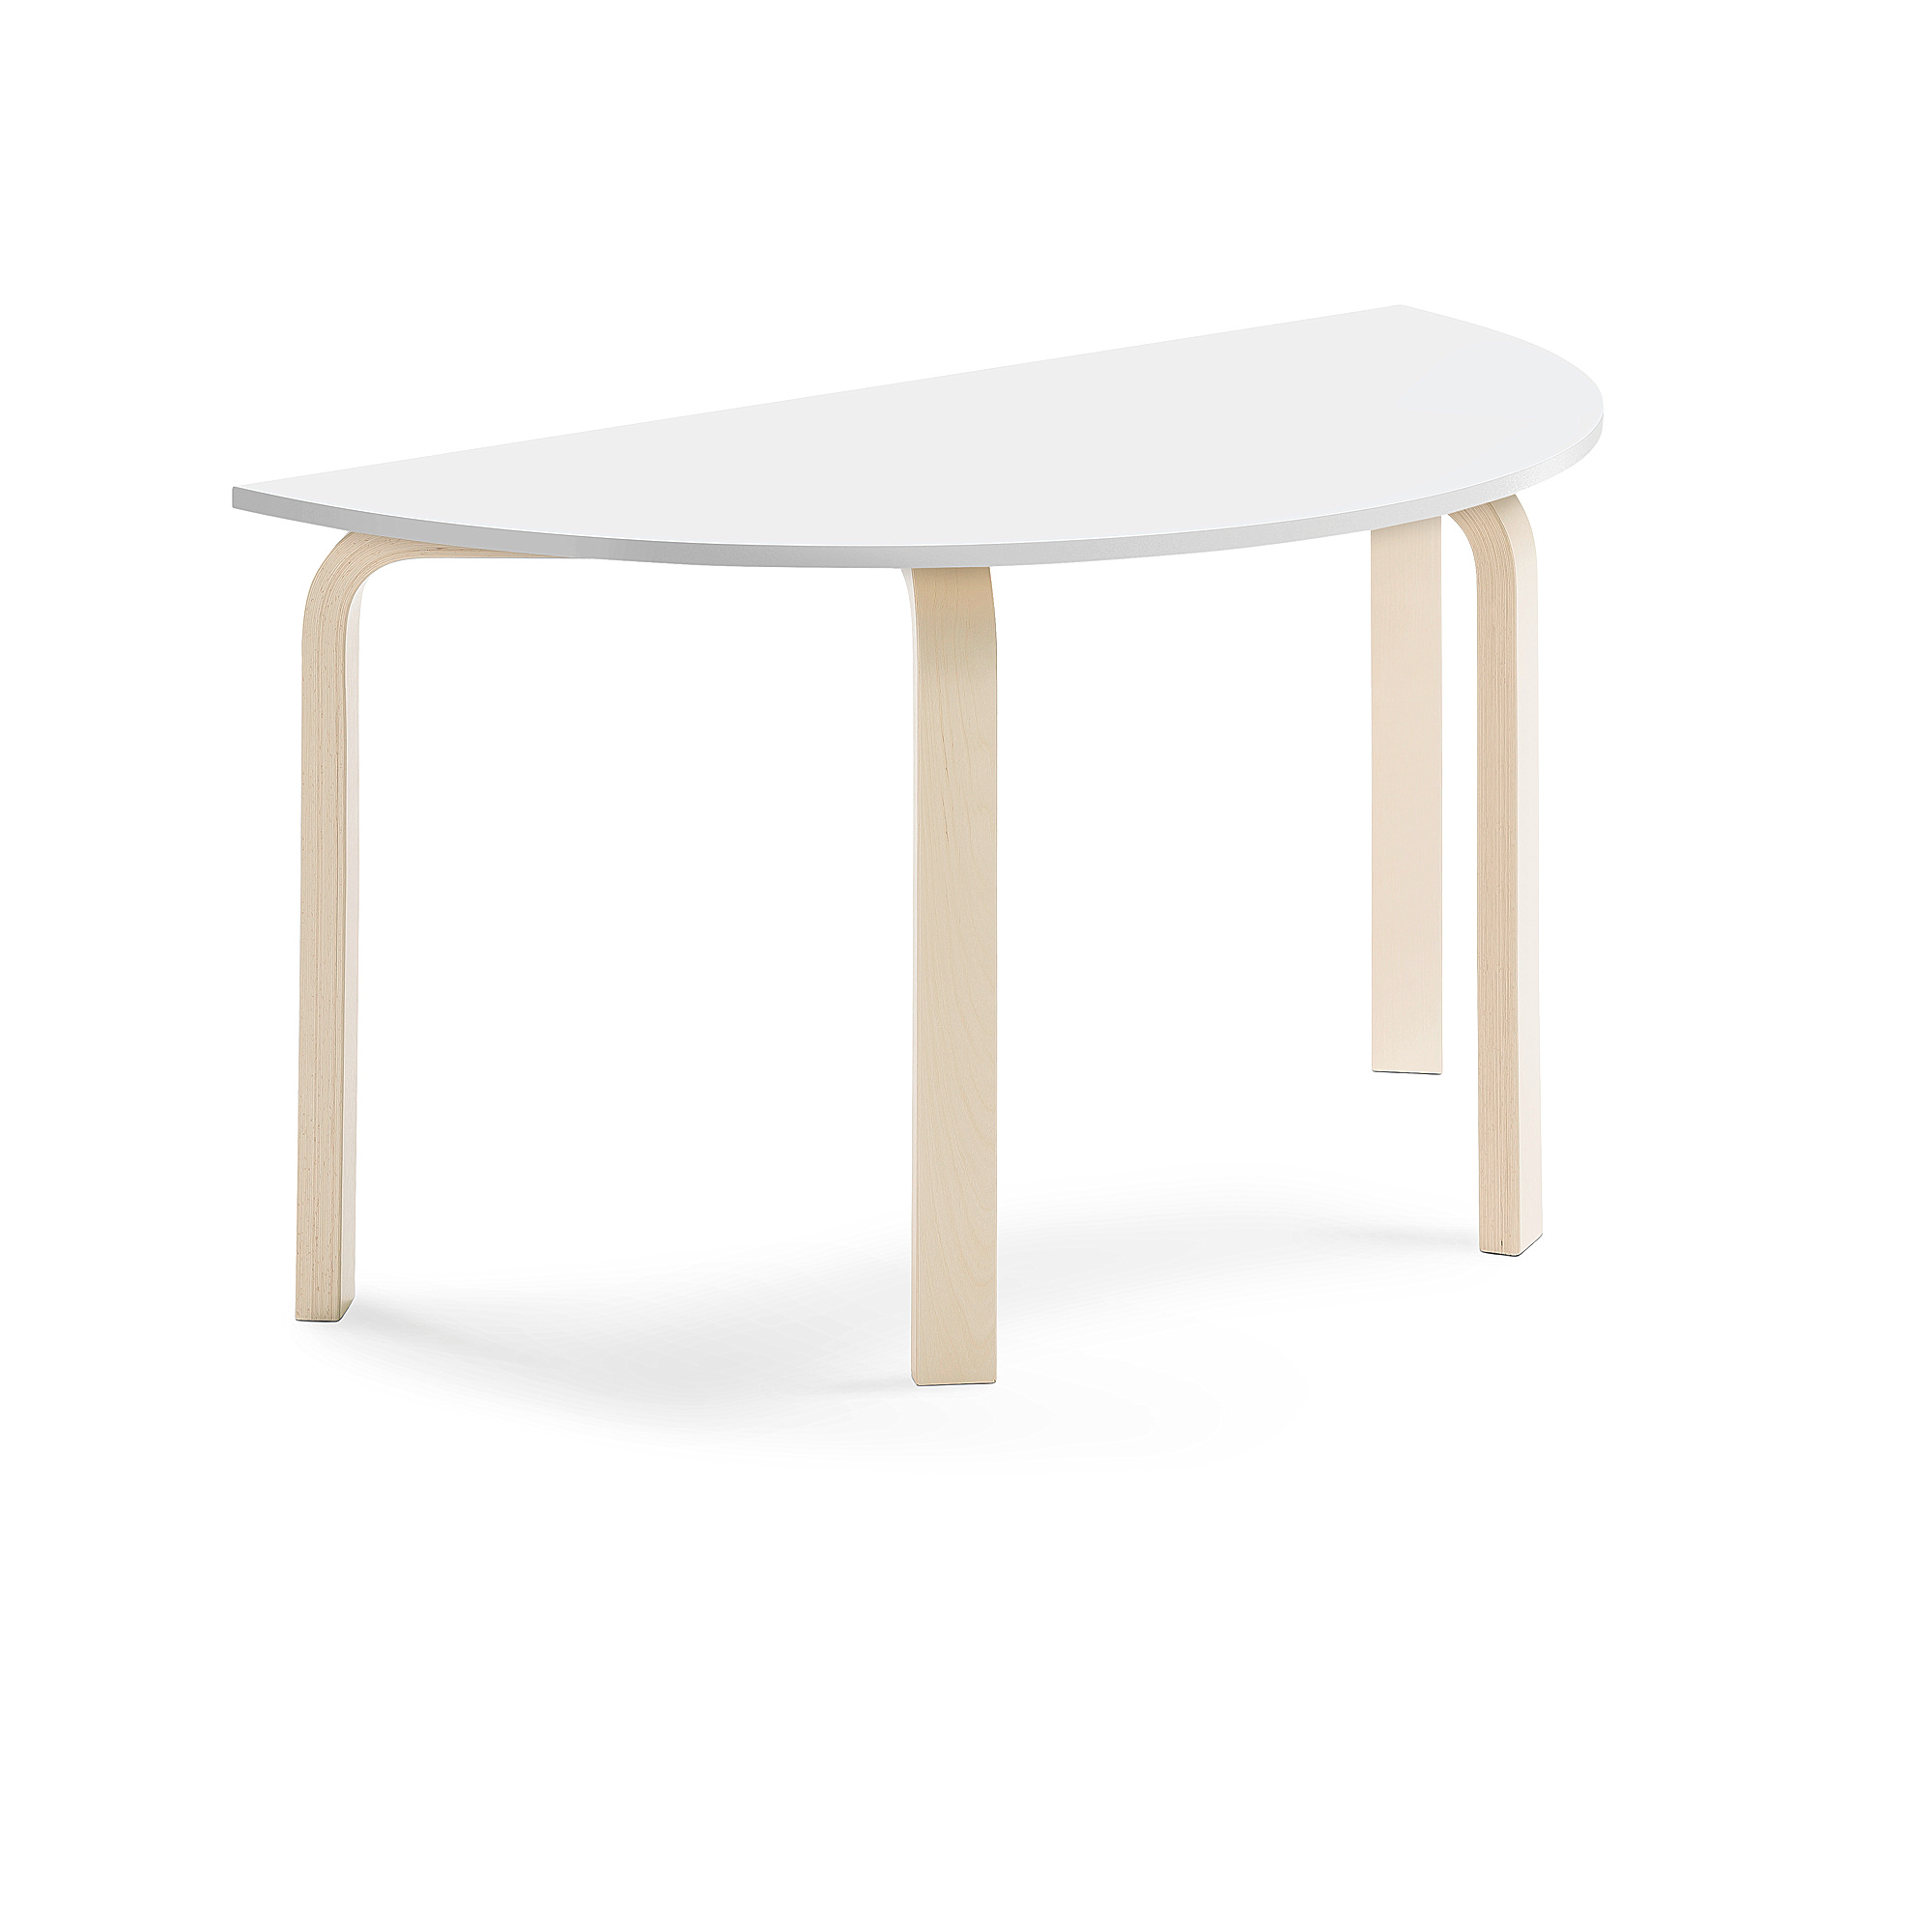 Stůl ELTON, půlkruh, 1200x600x640 mm, bříza, akustická HPL deska, bílá